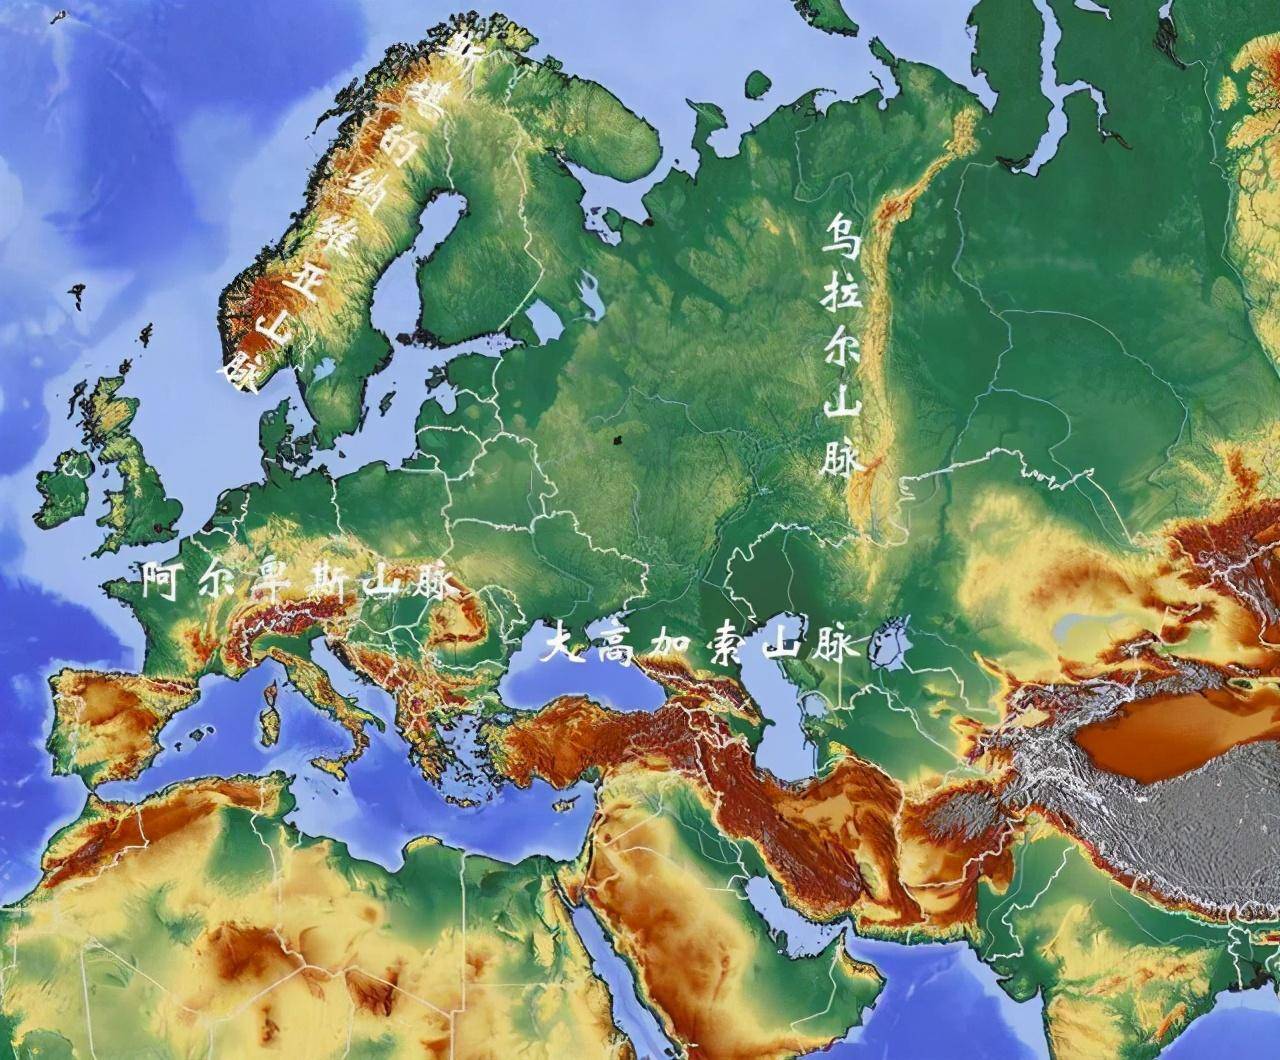 欧洲和亚洲不是一块完整的大陆吗,为什么还要强行分成